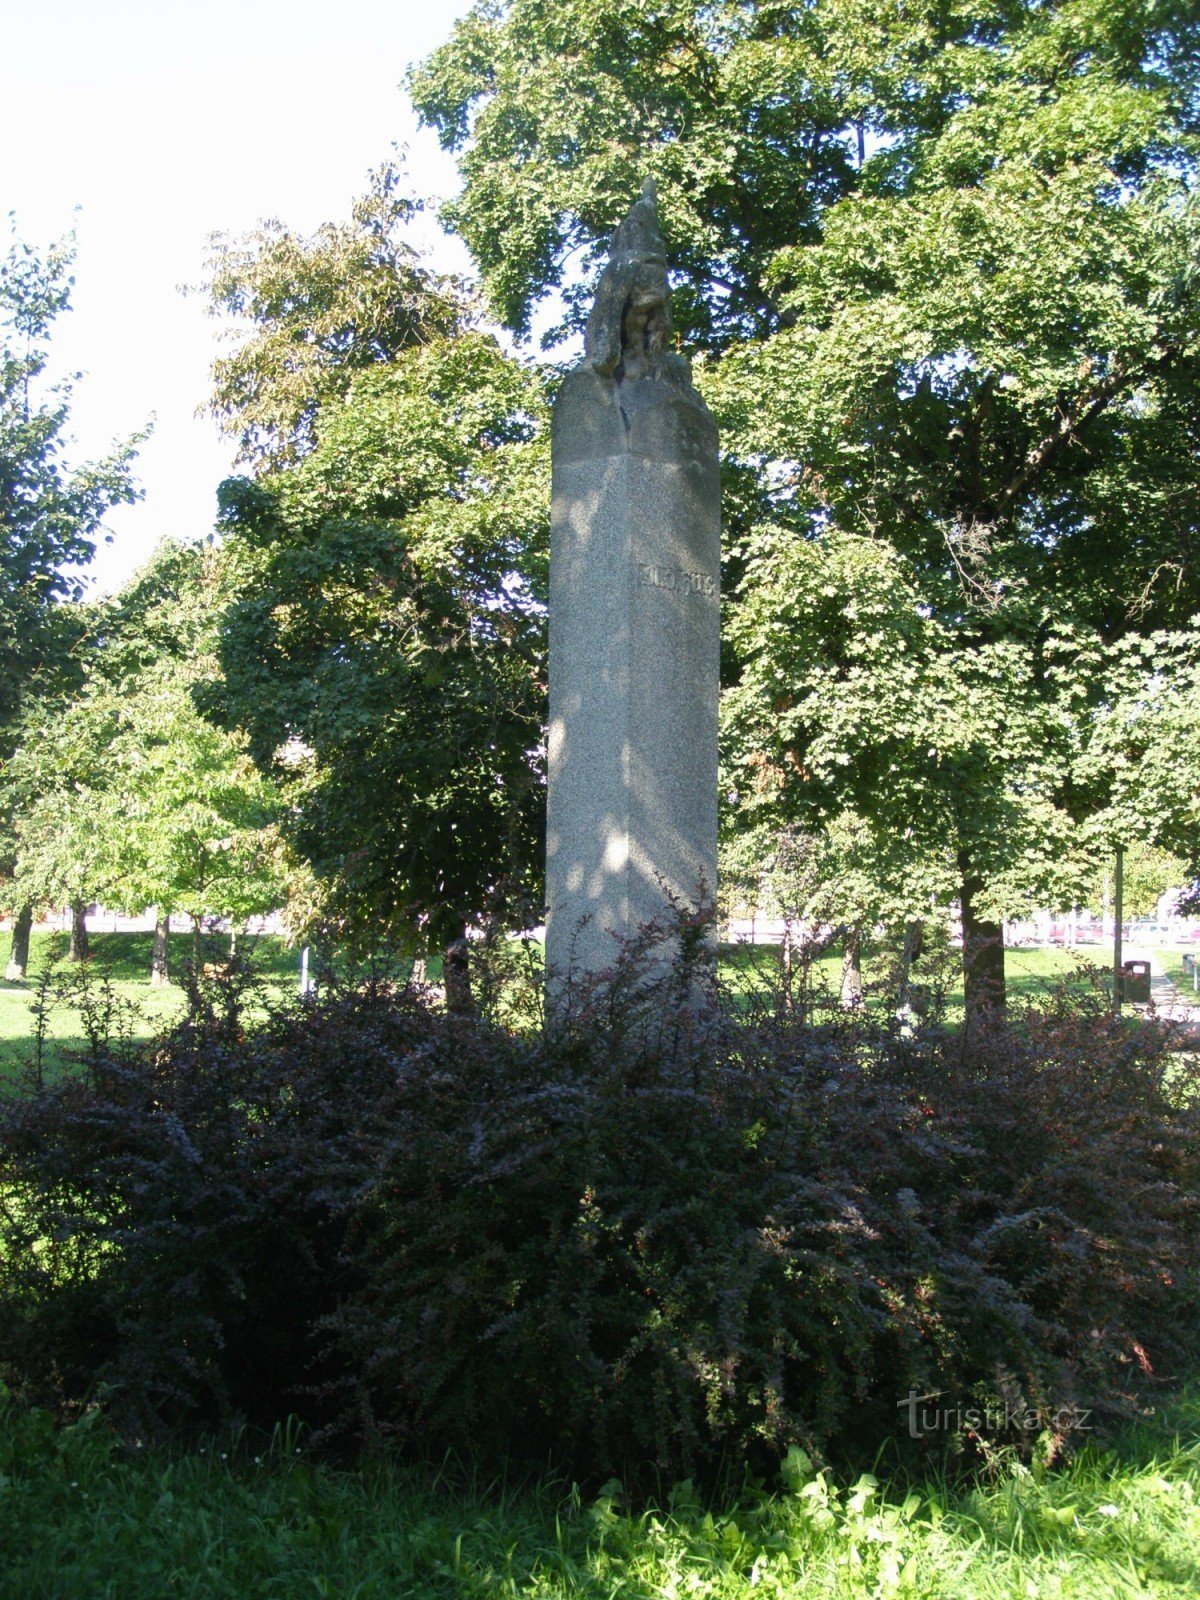 Градец Кралове - памятник Яну Гусу в Суковых садах